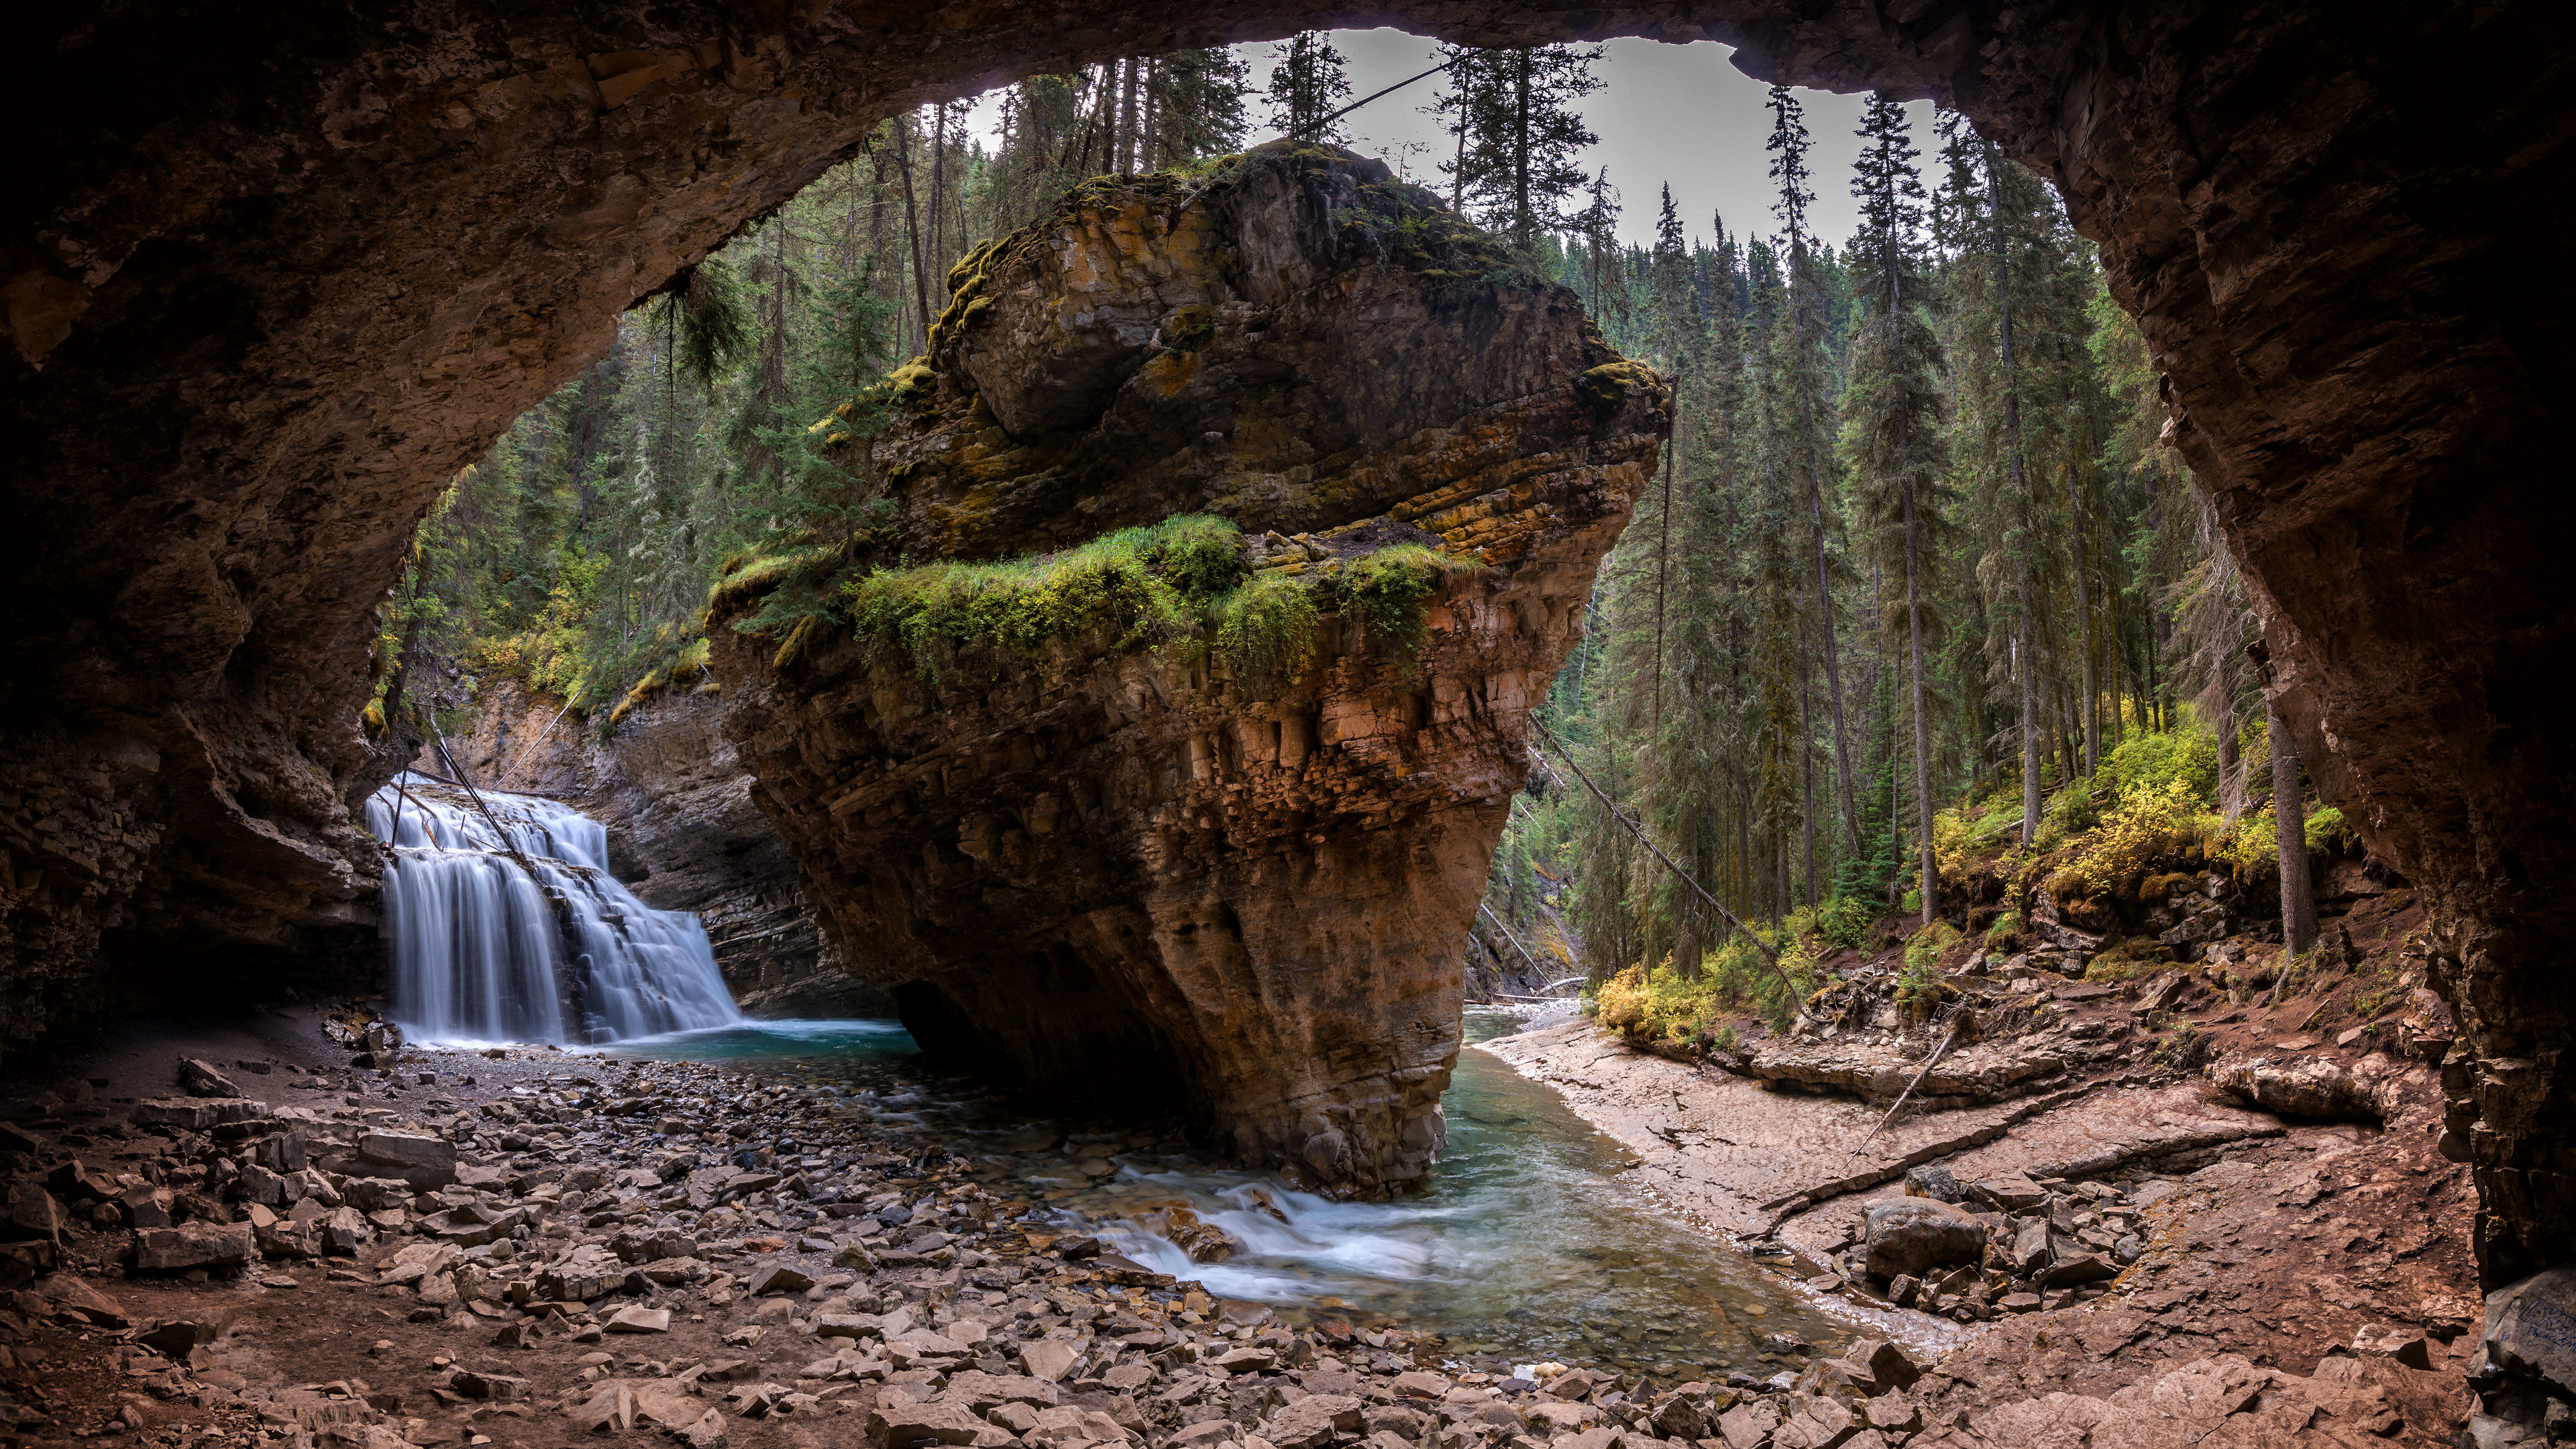 Фото Канада, Альберта, природа, водопад, течение, рок, лес, деревья, пещера - бесплатные картинки на Fonwall